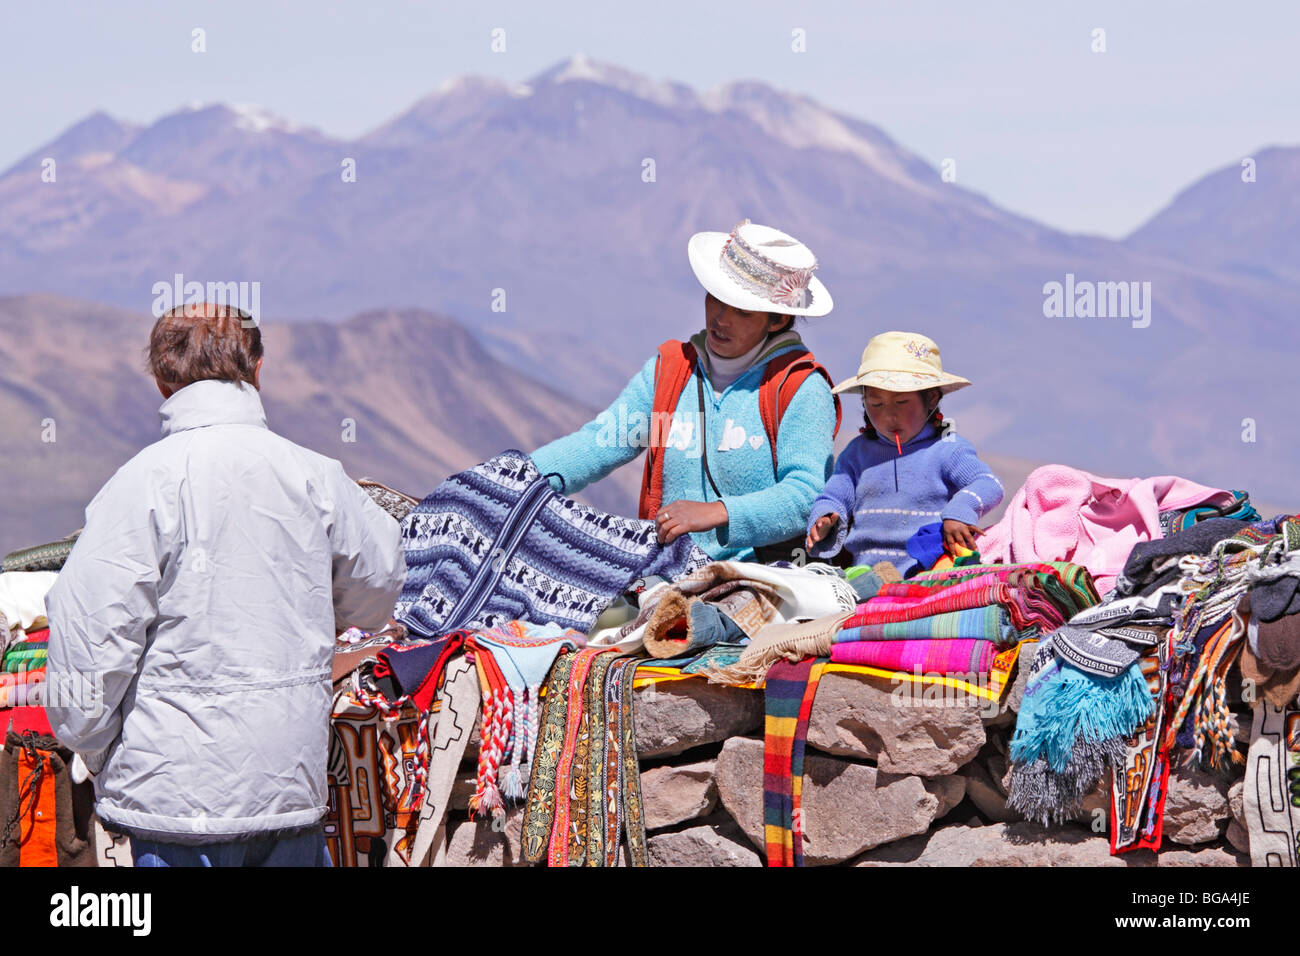 Vendita di souvenir di fronte dei vulcani, Pata Pampa Pass, Cordillera de Ampato, Ande, Perù, Sud America Foto Stock